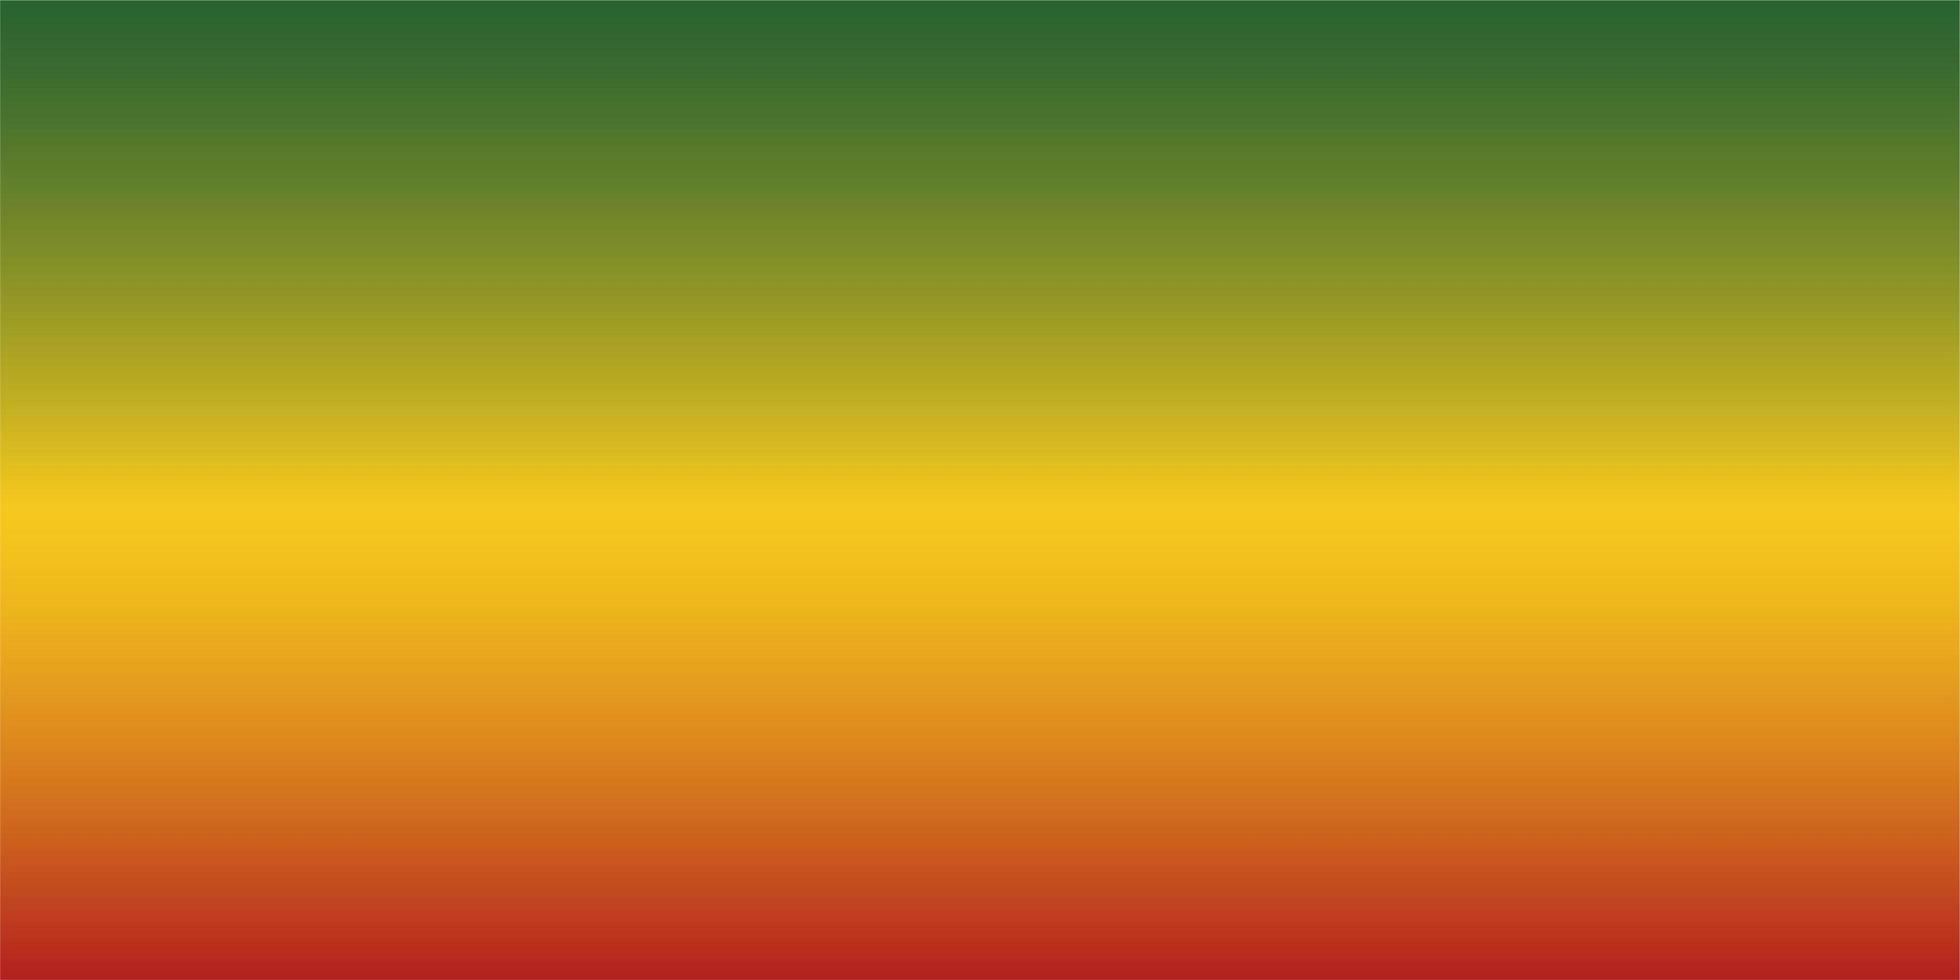 Giamaica reggae gradiente di sfondo rosso giallo e verde foto